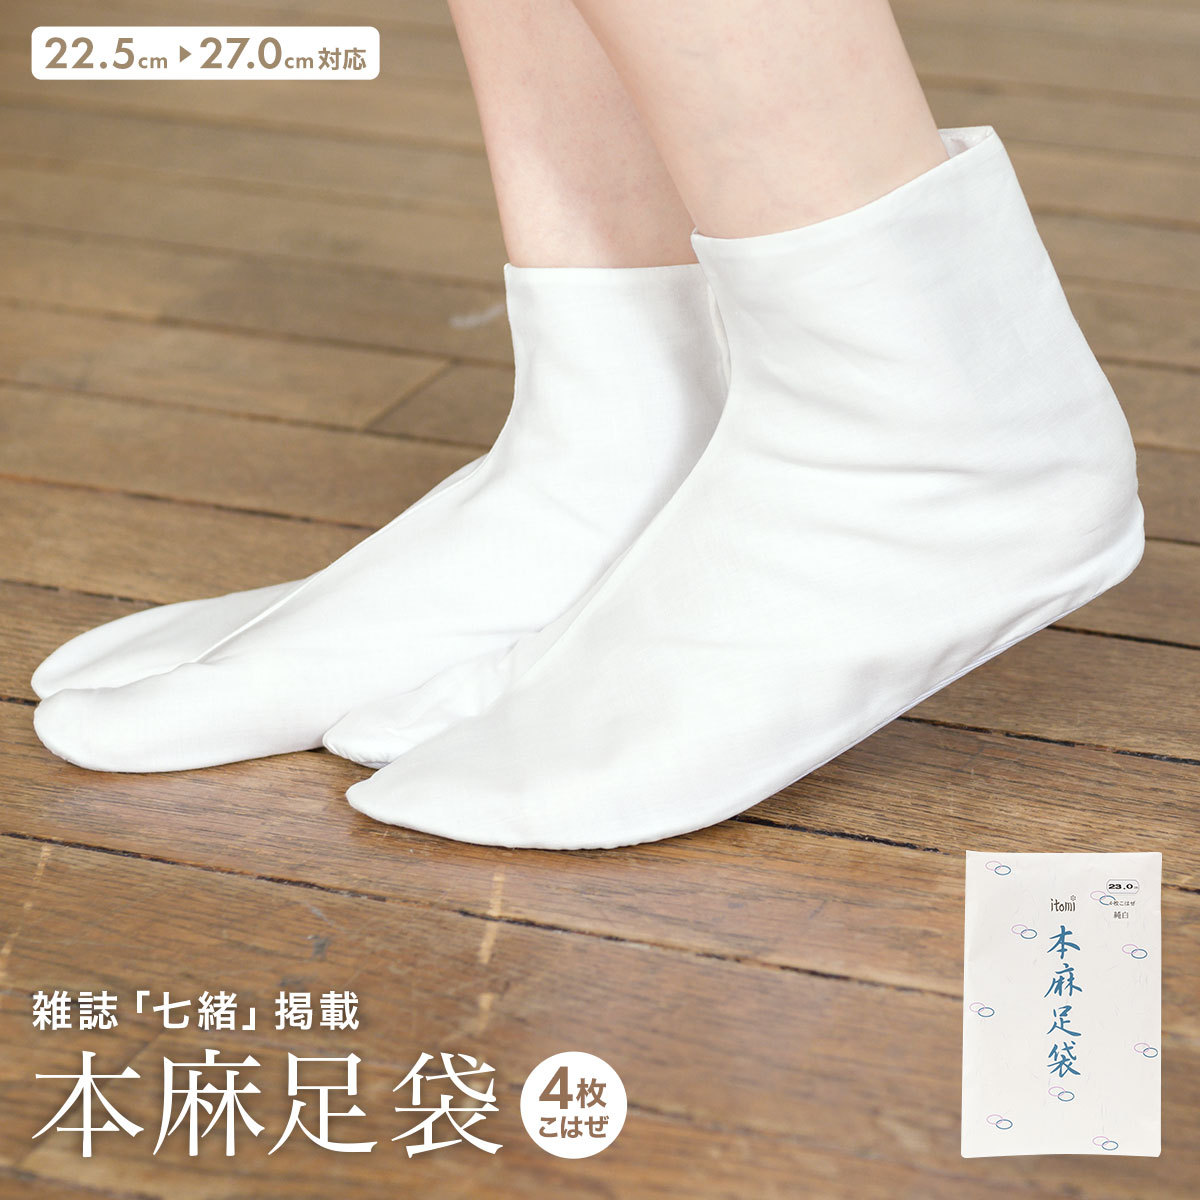 大人気定番商品 足袋 こはぜ付 日本製 あづま姿 麻足袋 千鳥 21.0cm-27.0cm 白 涼しい 晒裏 白足袋 4枚コハゼ 大人 女性 男性 